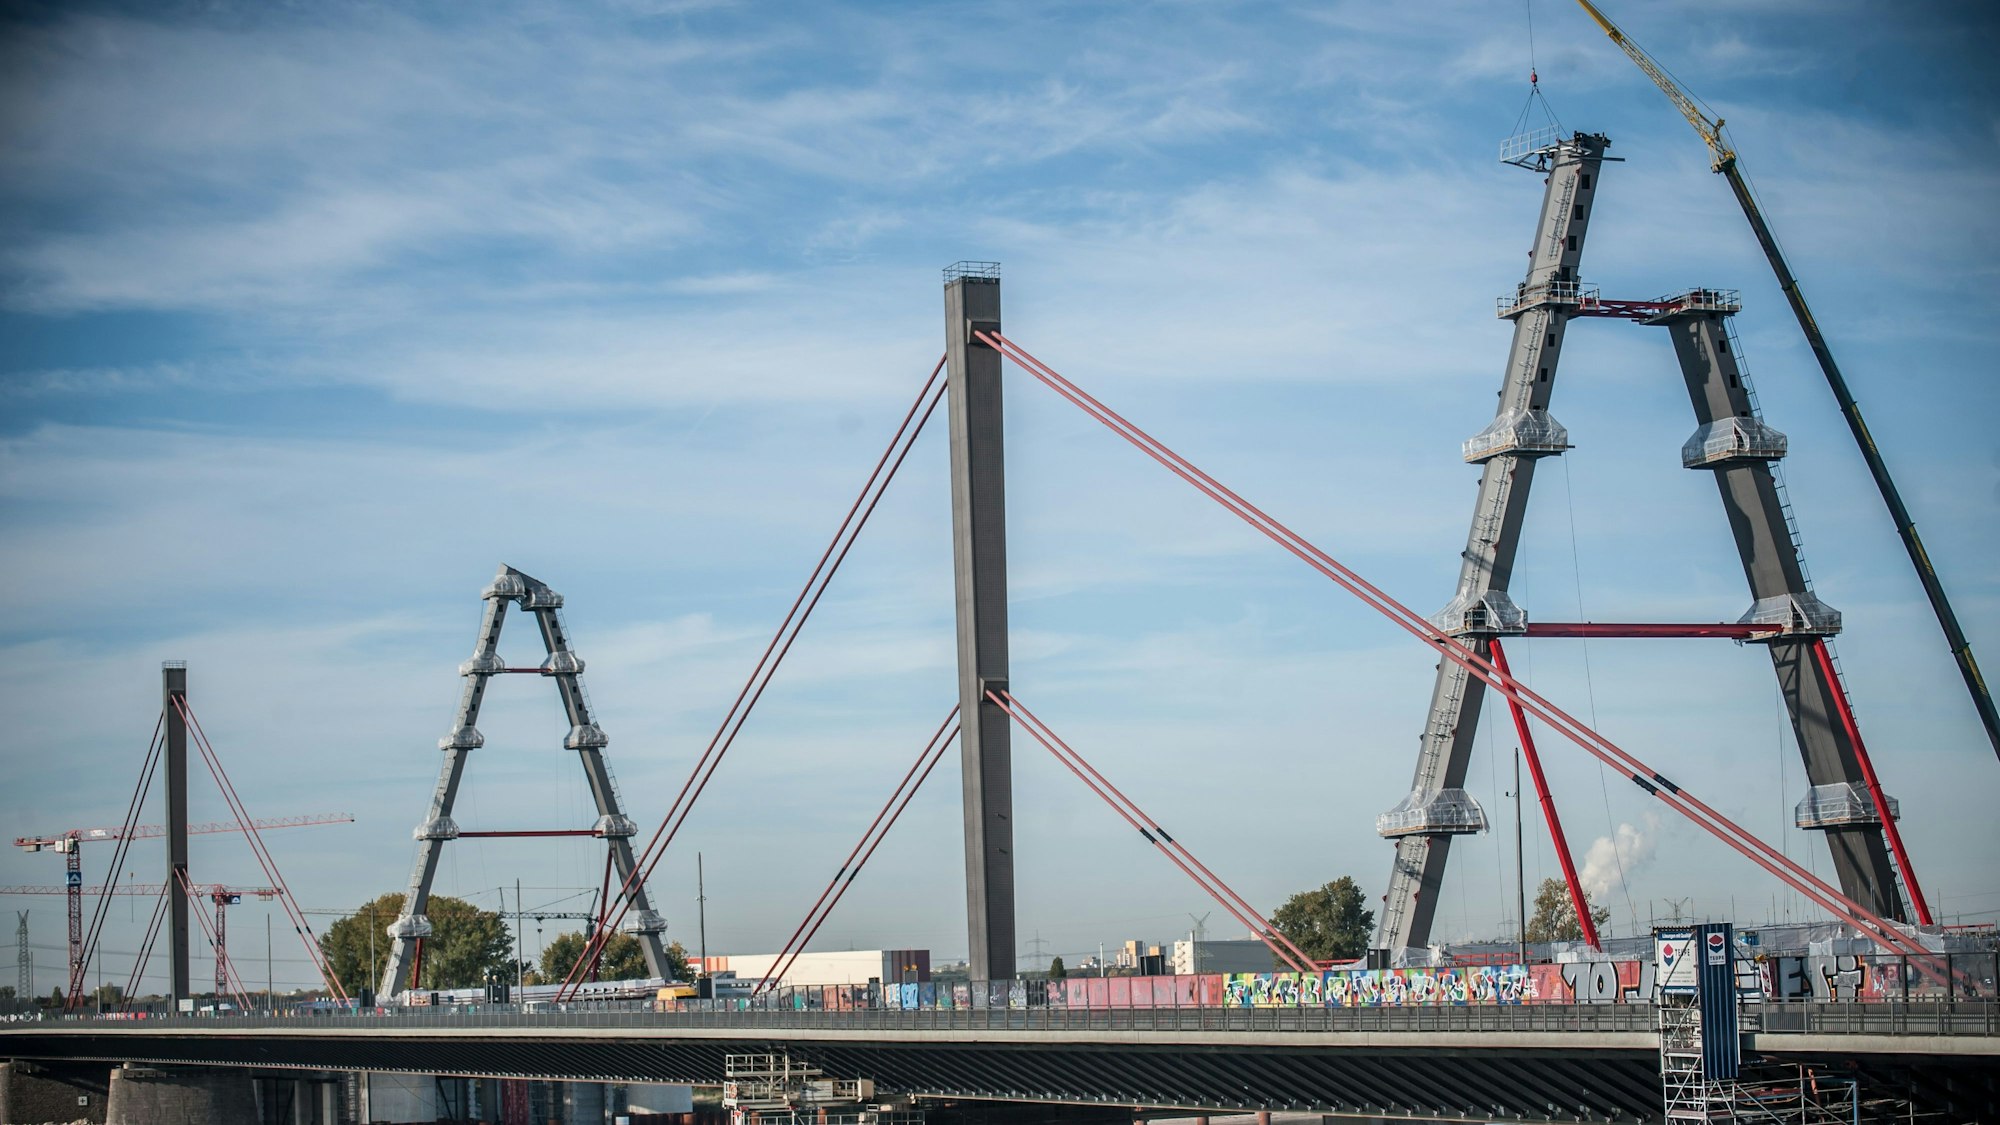 Die neue Rheinbrücke für die Autobahn 1 zwischen Köln und Leverkusen im Oktober 2022. Ein Pylon steht, ein zweiter wird gerade aufgebaut. Dazu hängt ein Kran eine Arbeitsplattform ein.